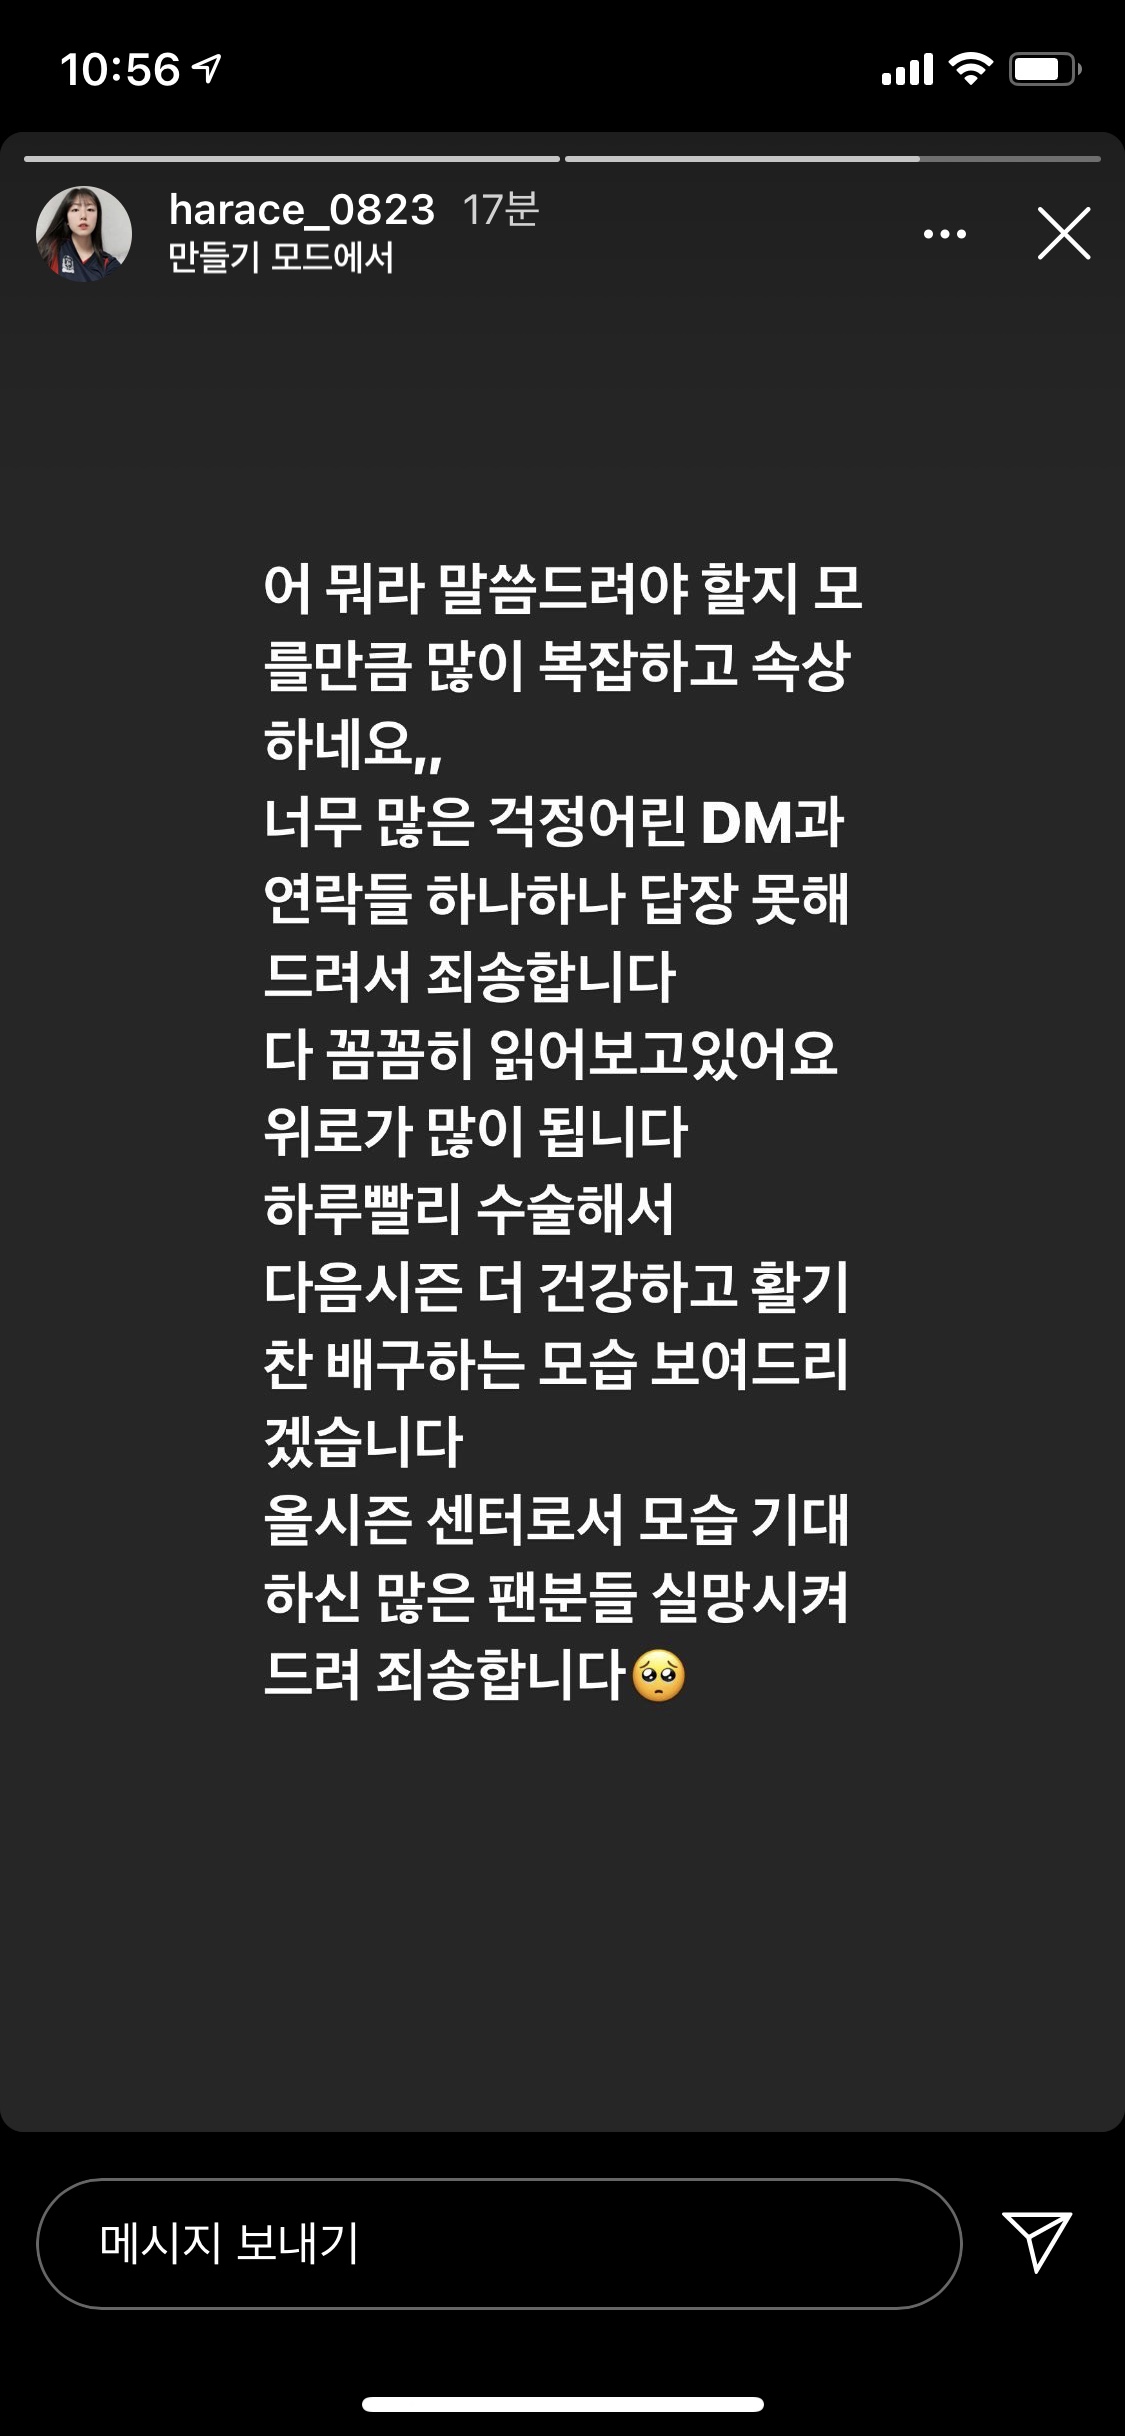 정호영이 자신을 걱정하는 팬들에게 “다음 시즌에 건강한 모습으로 돌아오겠다”며 희망의 메시지를 전했다.  정호영 인스타그램 캡쳐